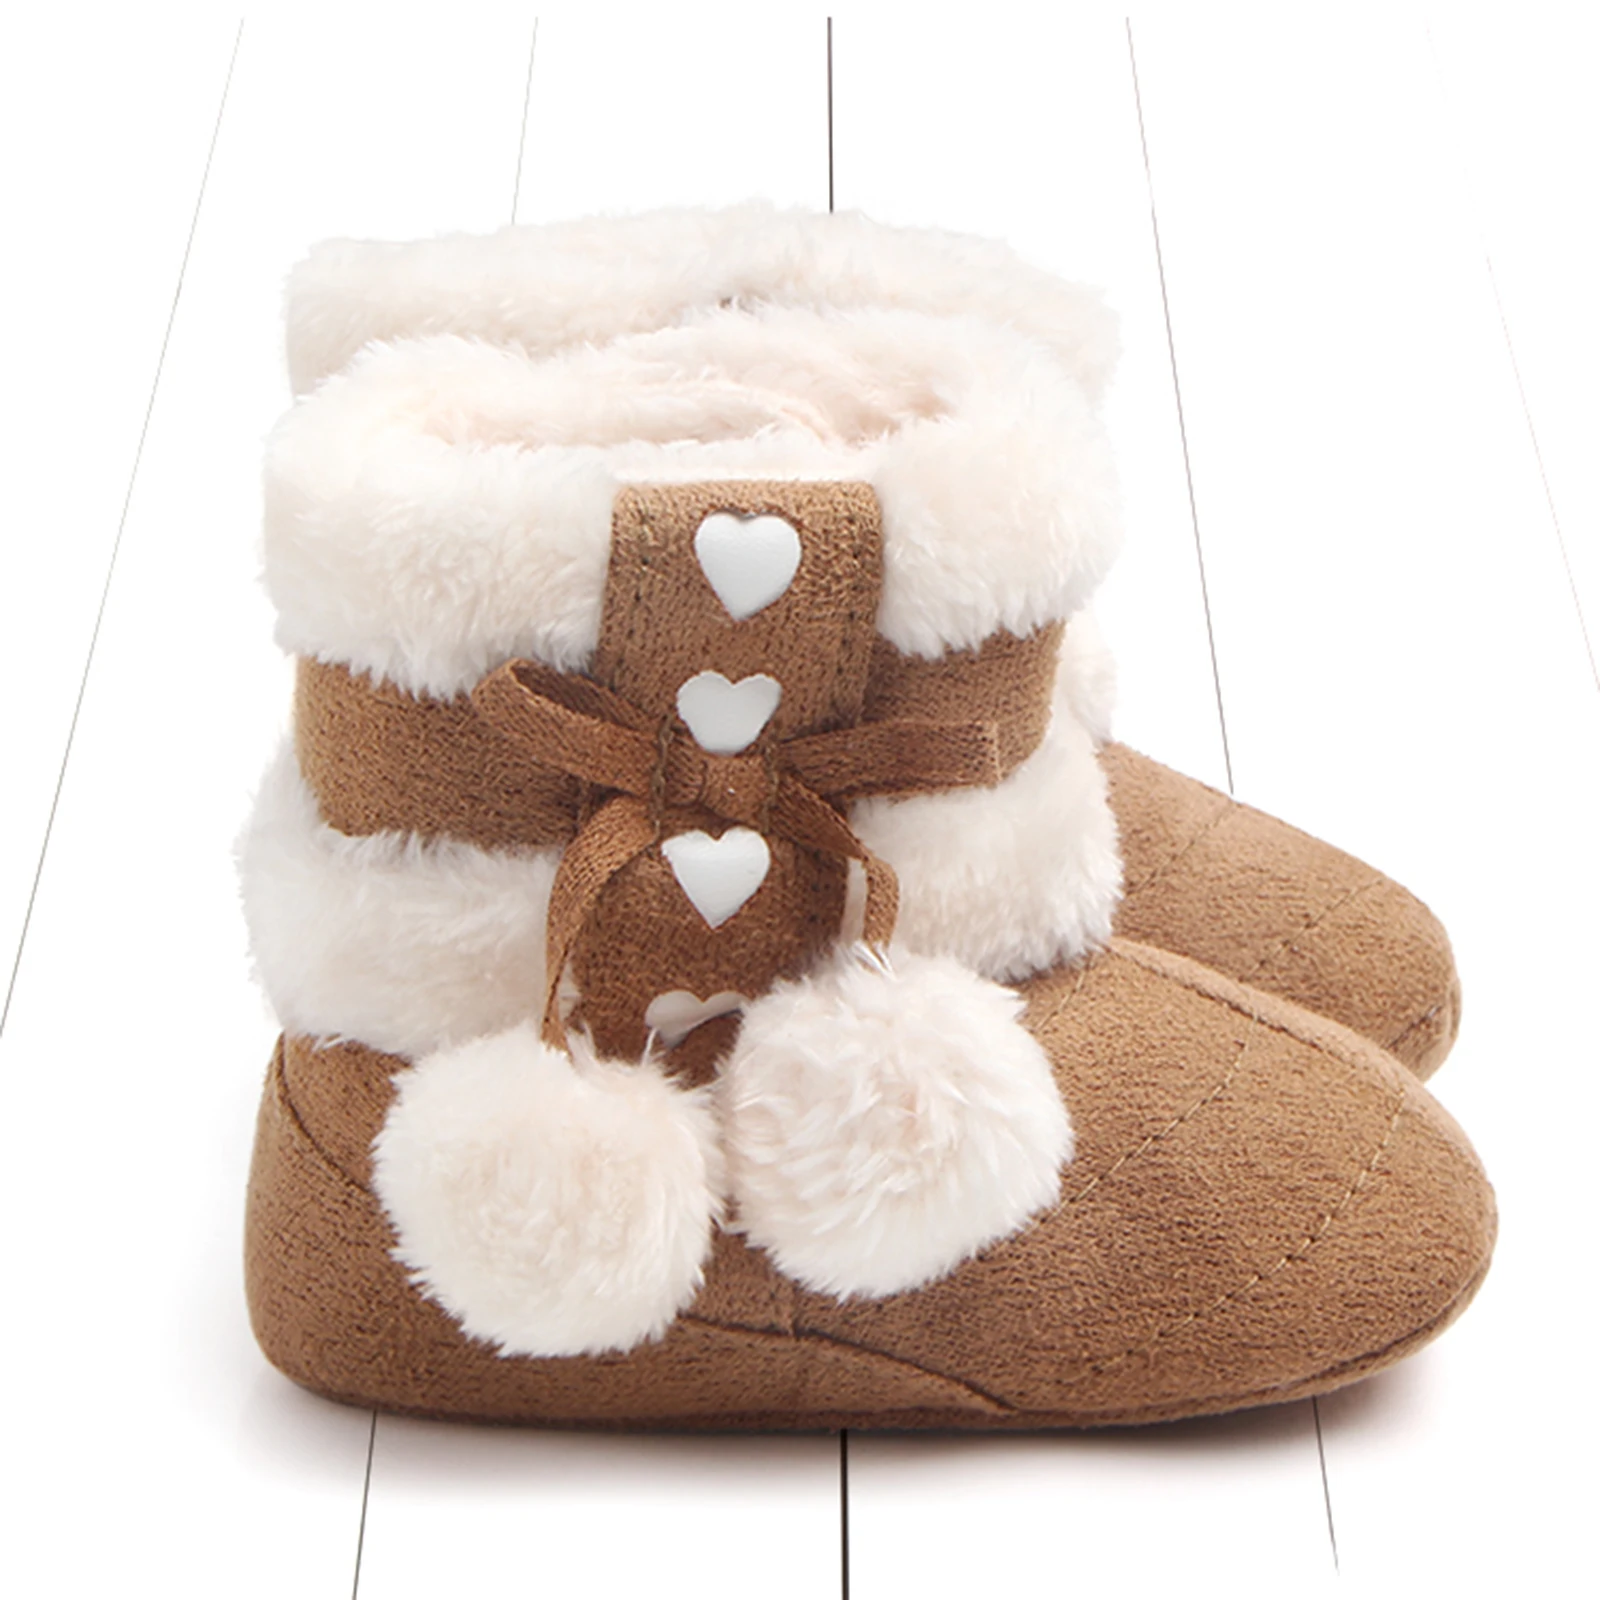 Stivali invernali per neonate stivali invernali con fiocco carino scarpe da neve con pompon di peluche scarpe da passeggio per bambini caldi per neonati